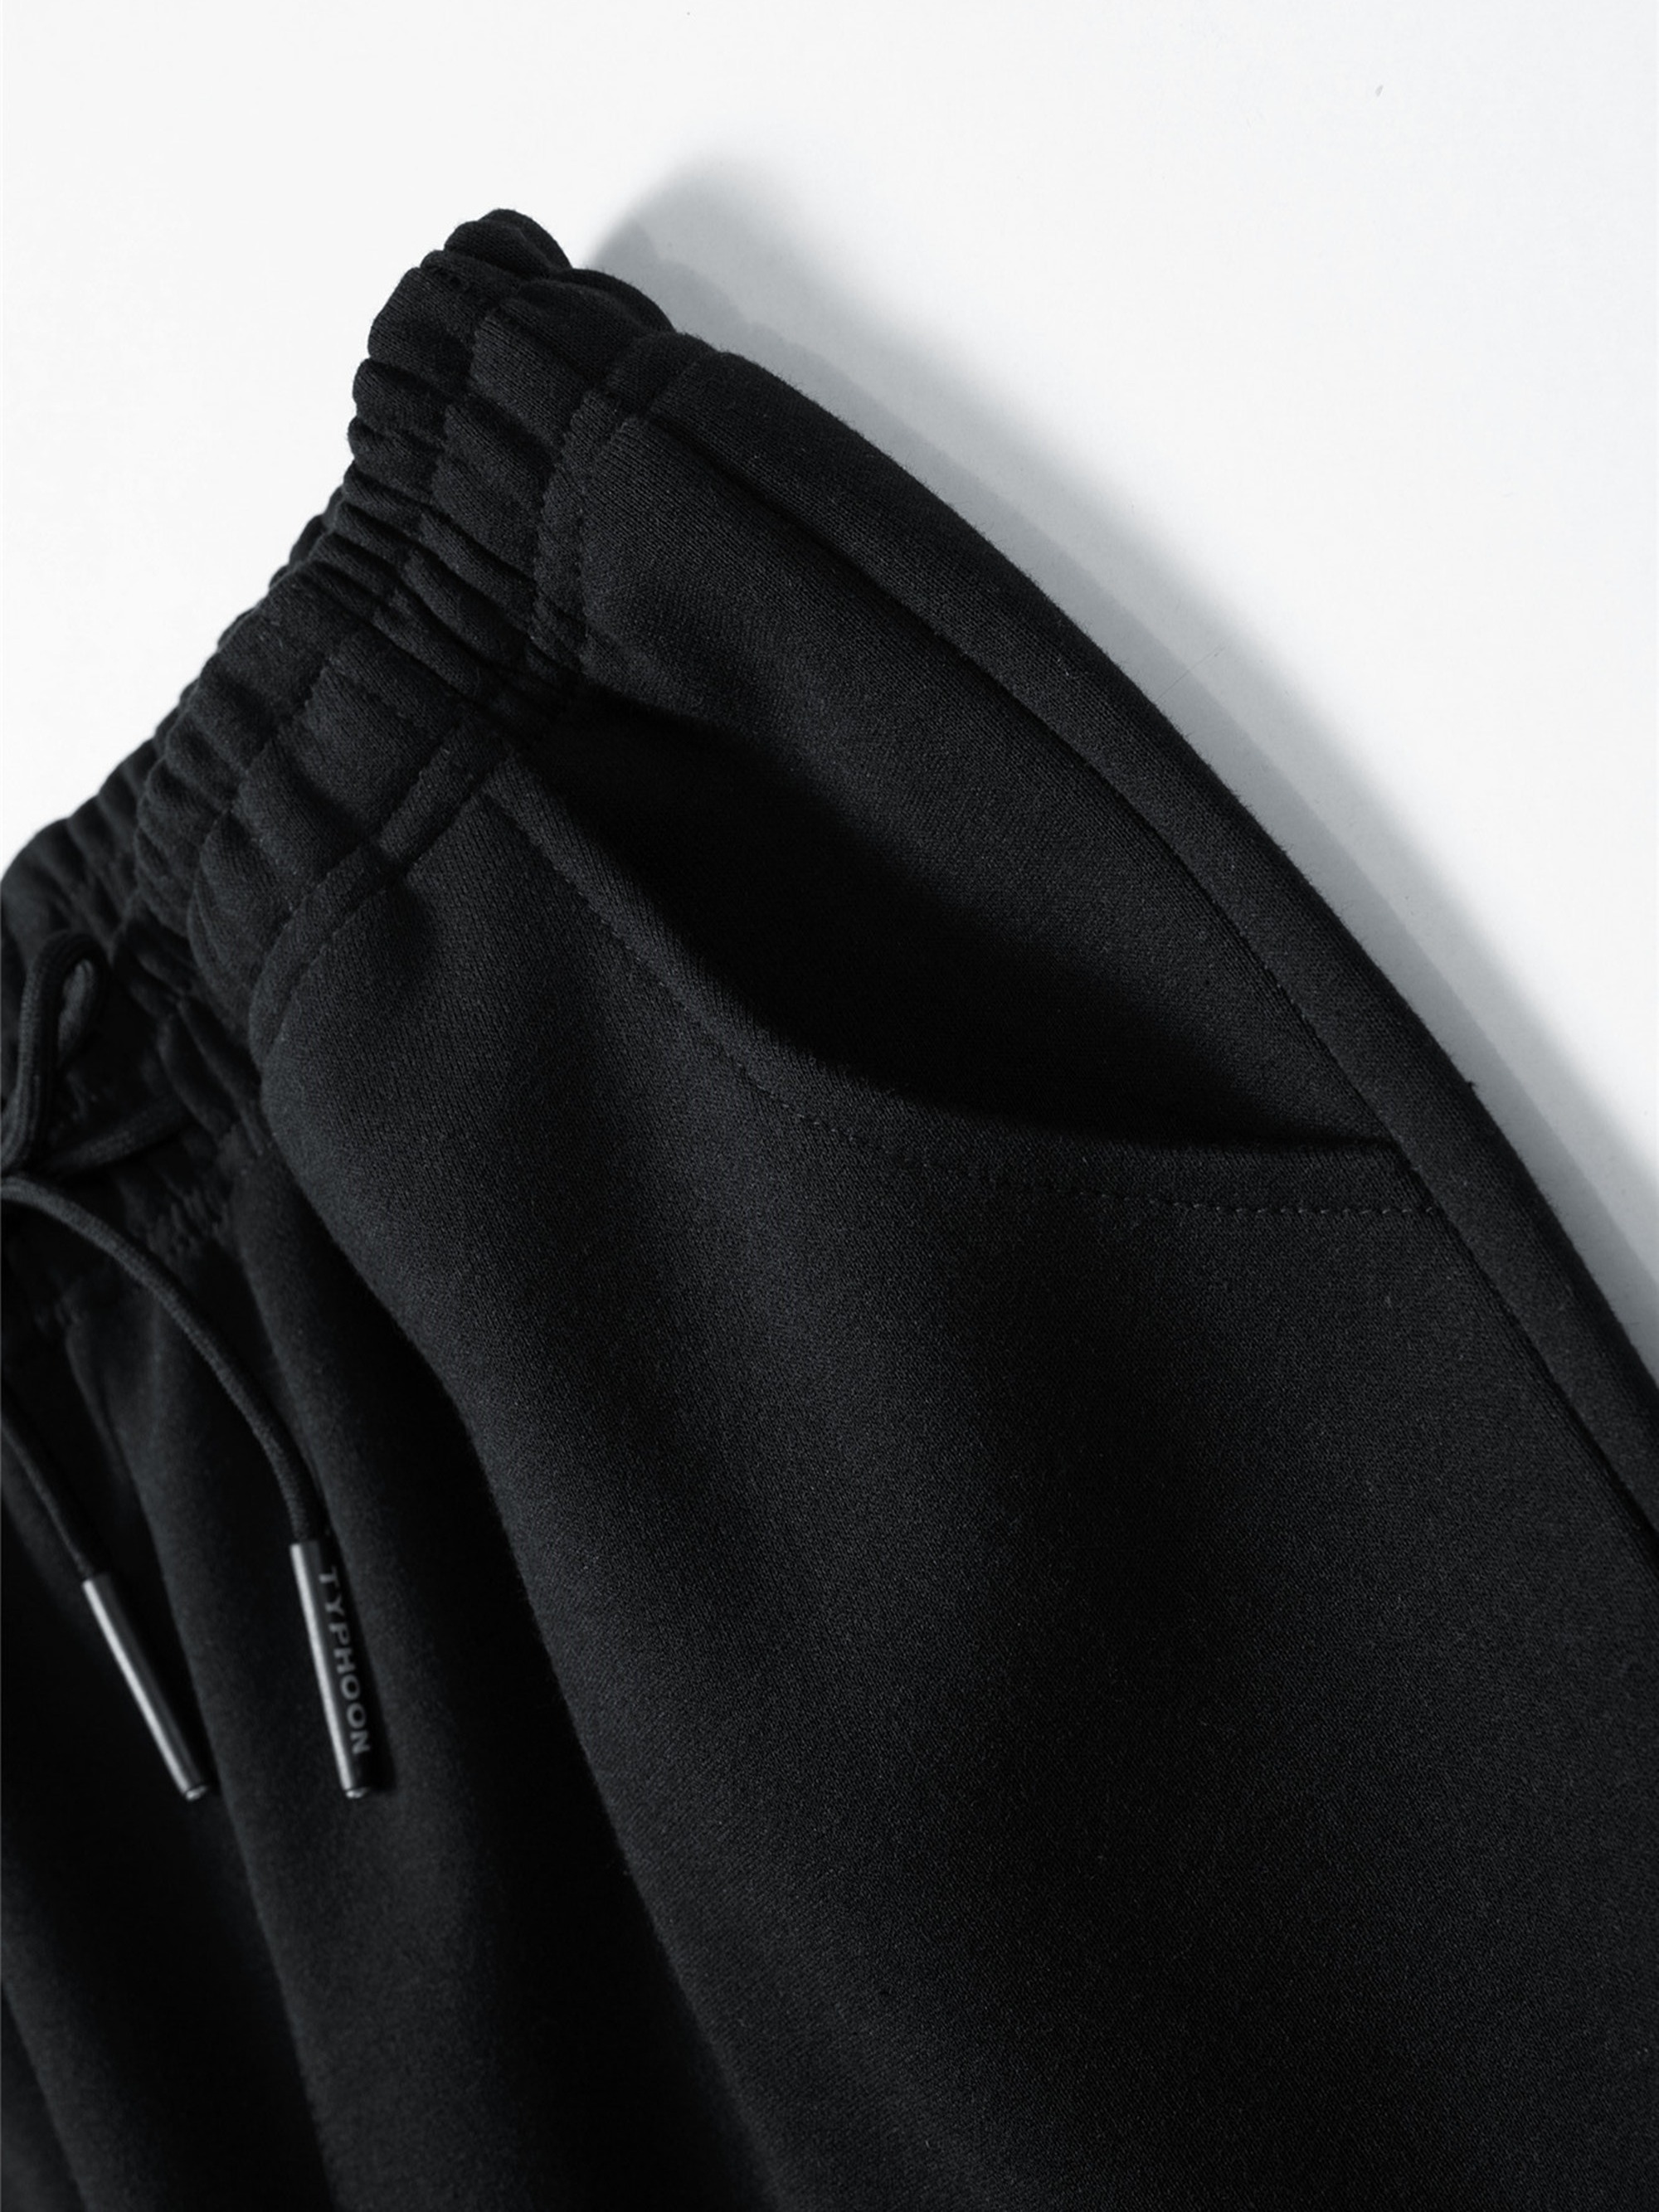 Men's Casual Drawstring Black Sweatpants